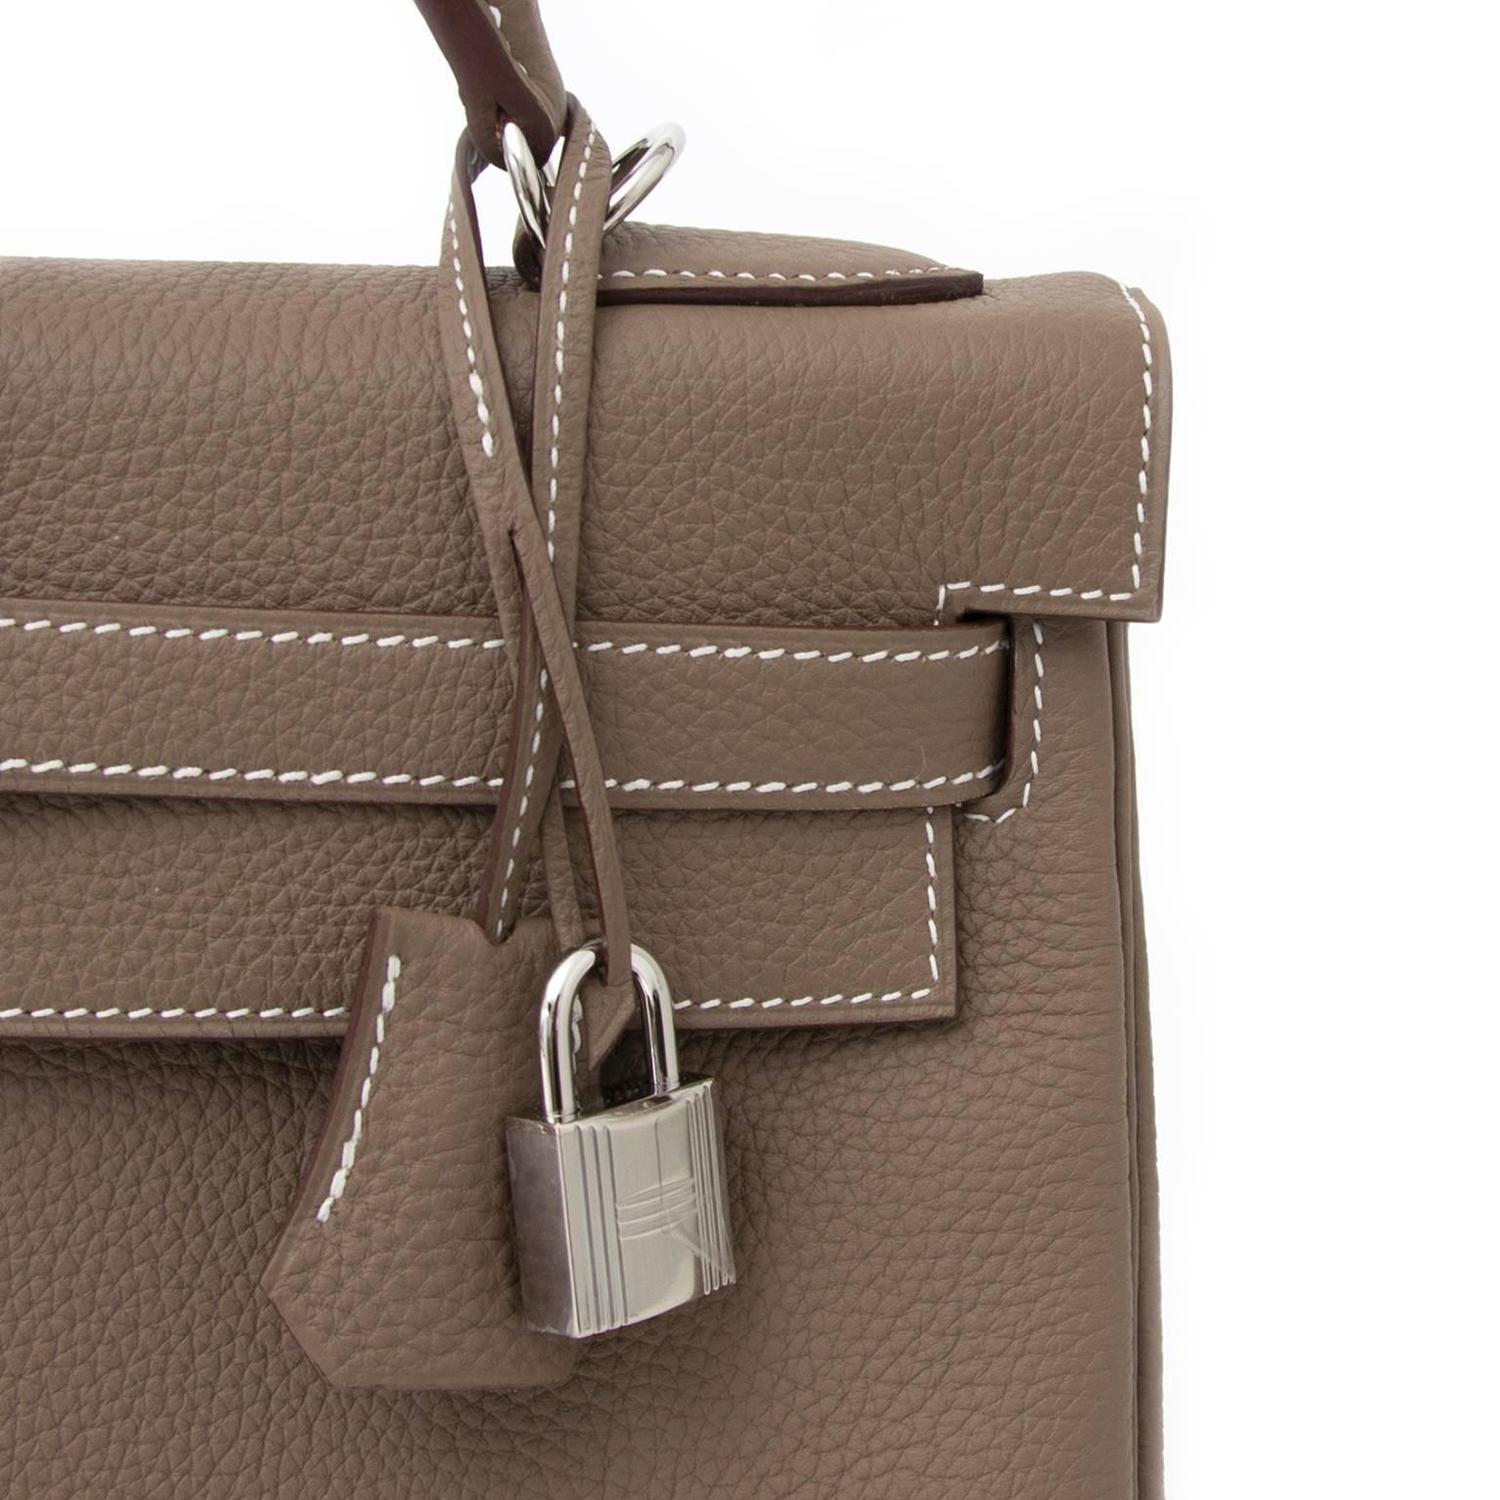 handbag hermes paris - Brand New Hermes Kelly Etoupe Retourne 32 Togo PHW at 1stdibs